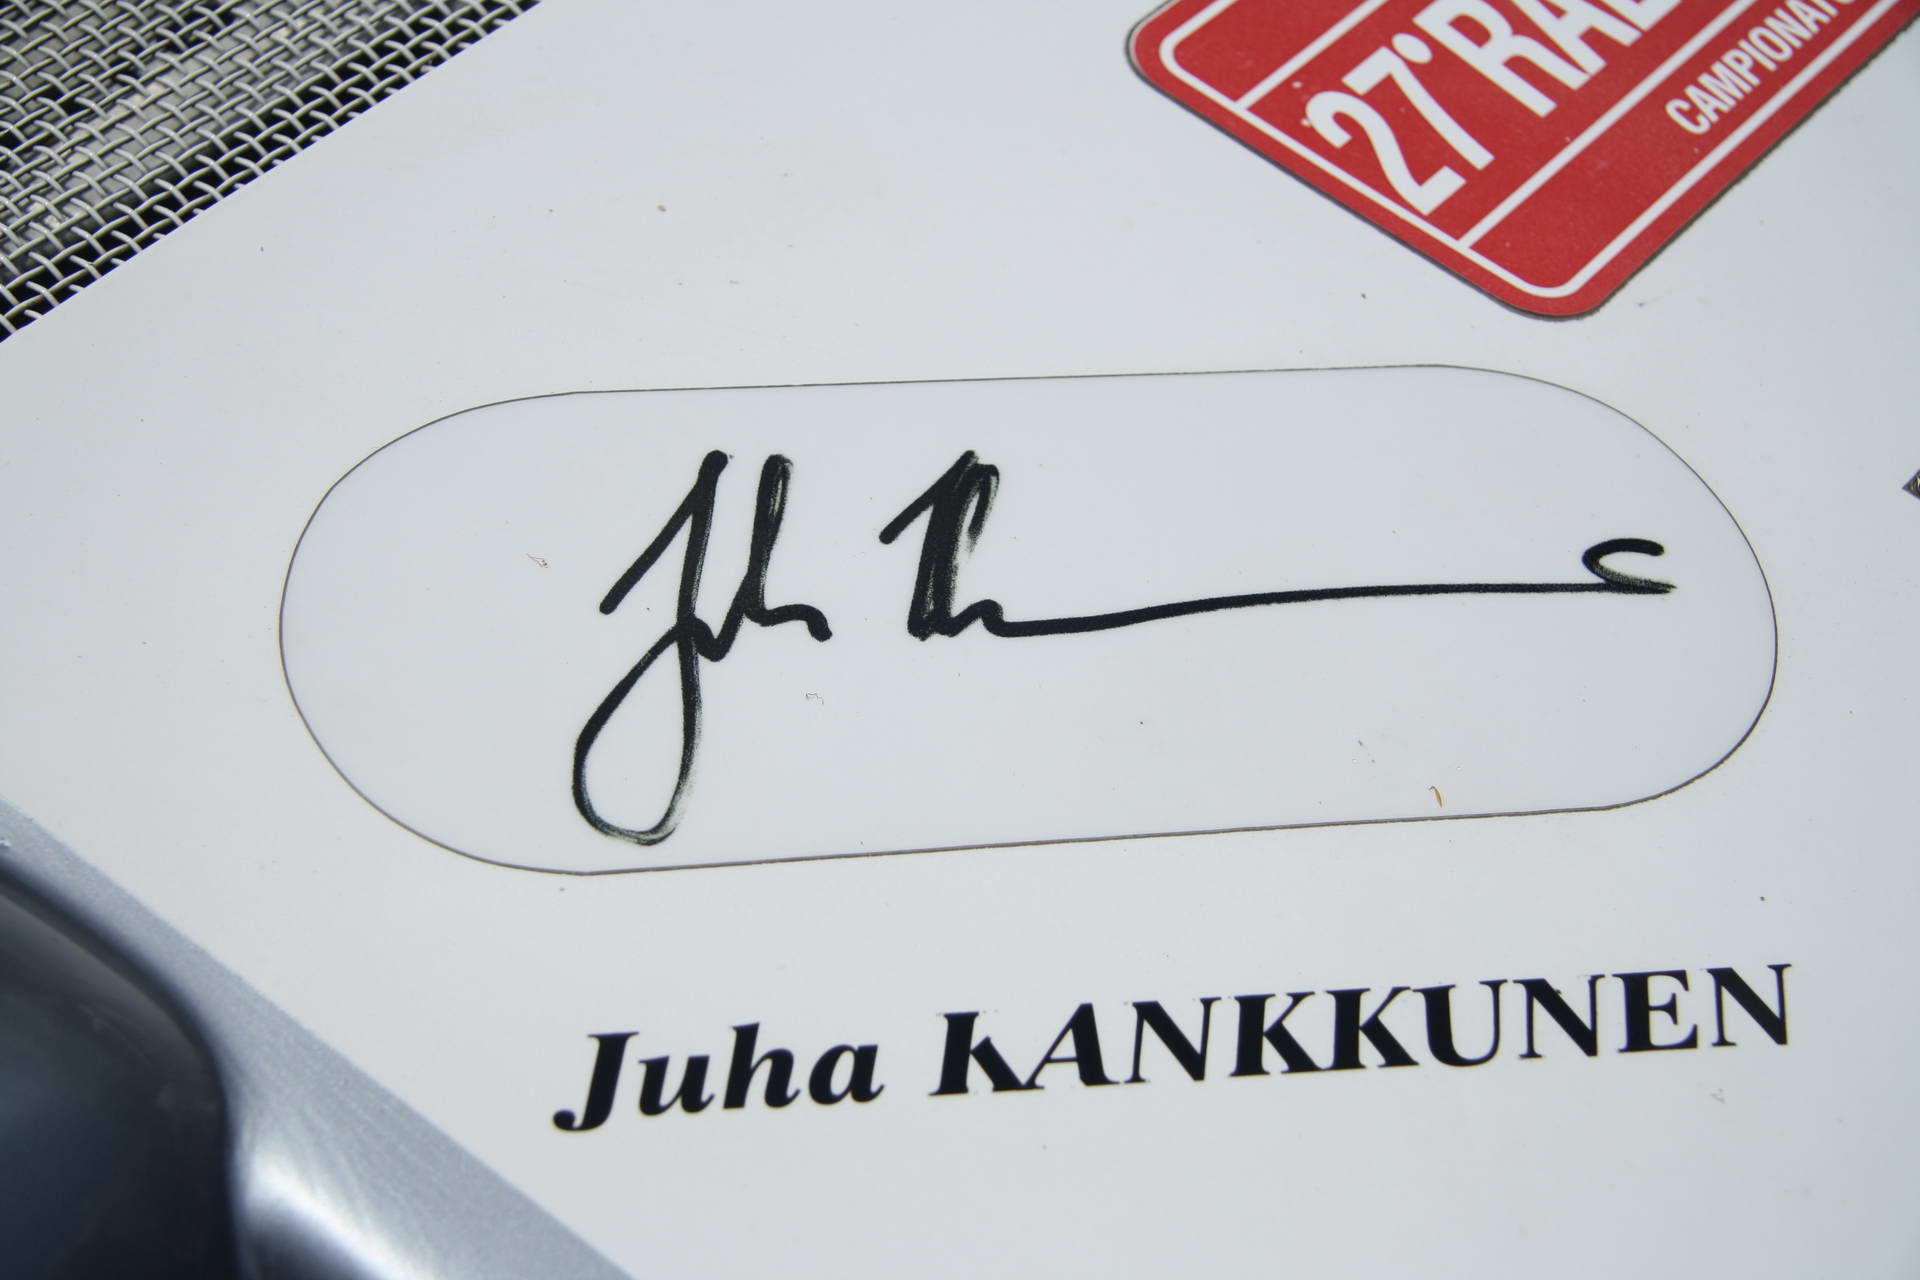 Juha Kankkunen